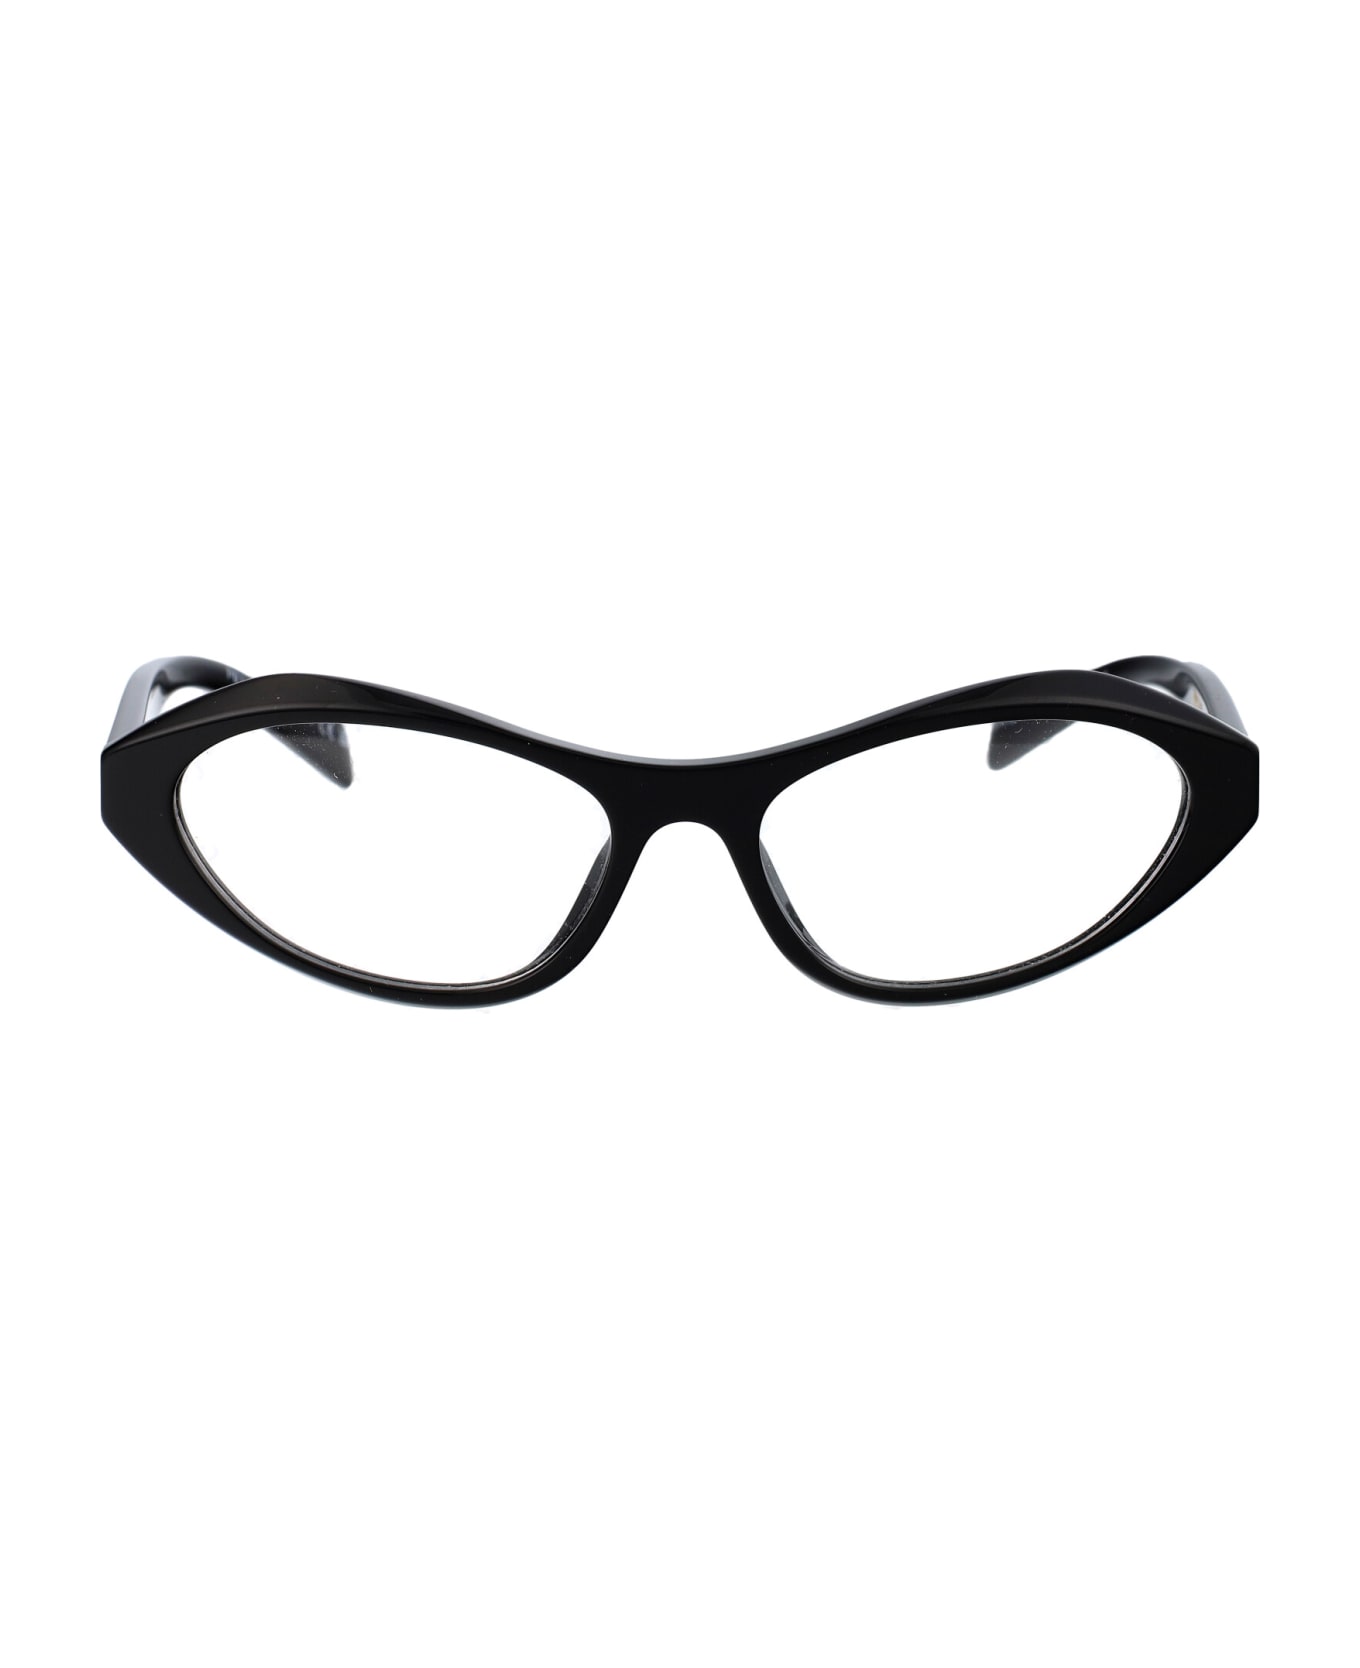 Prada Eyewear 0pr A21v Glasses - 16K1O1 Black